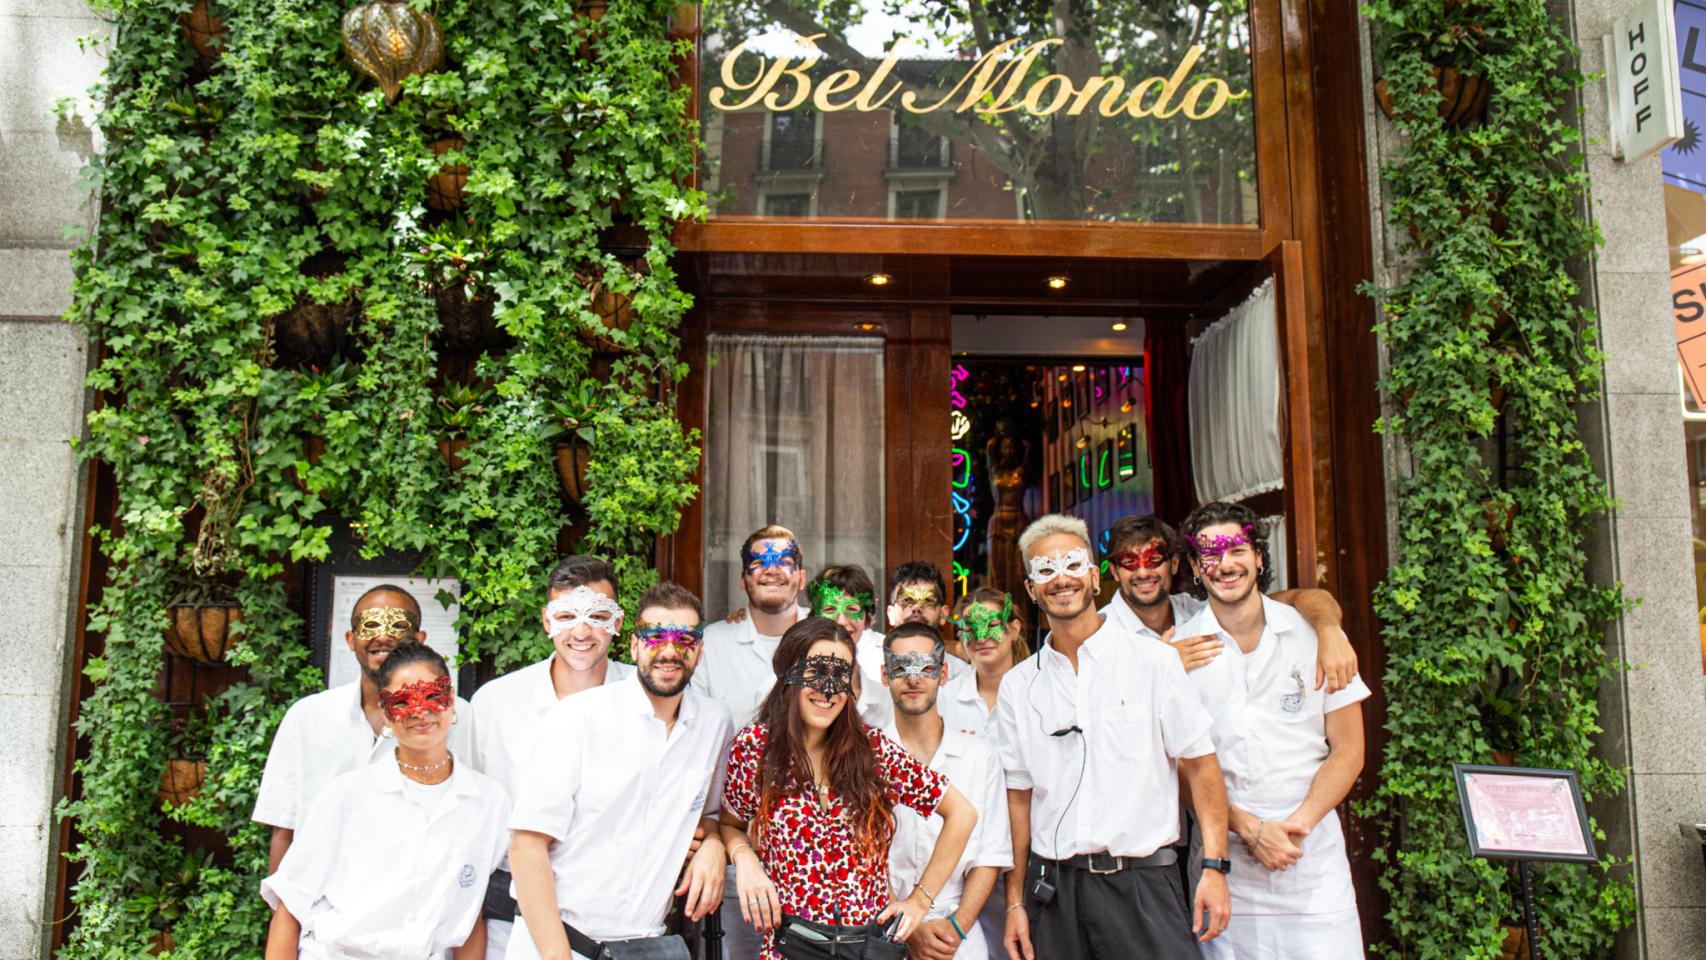 Personal de Bel Mondo con máscaras del carnaval de Venecia para la celebración de su aniversario.